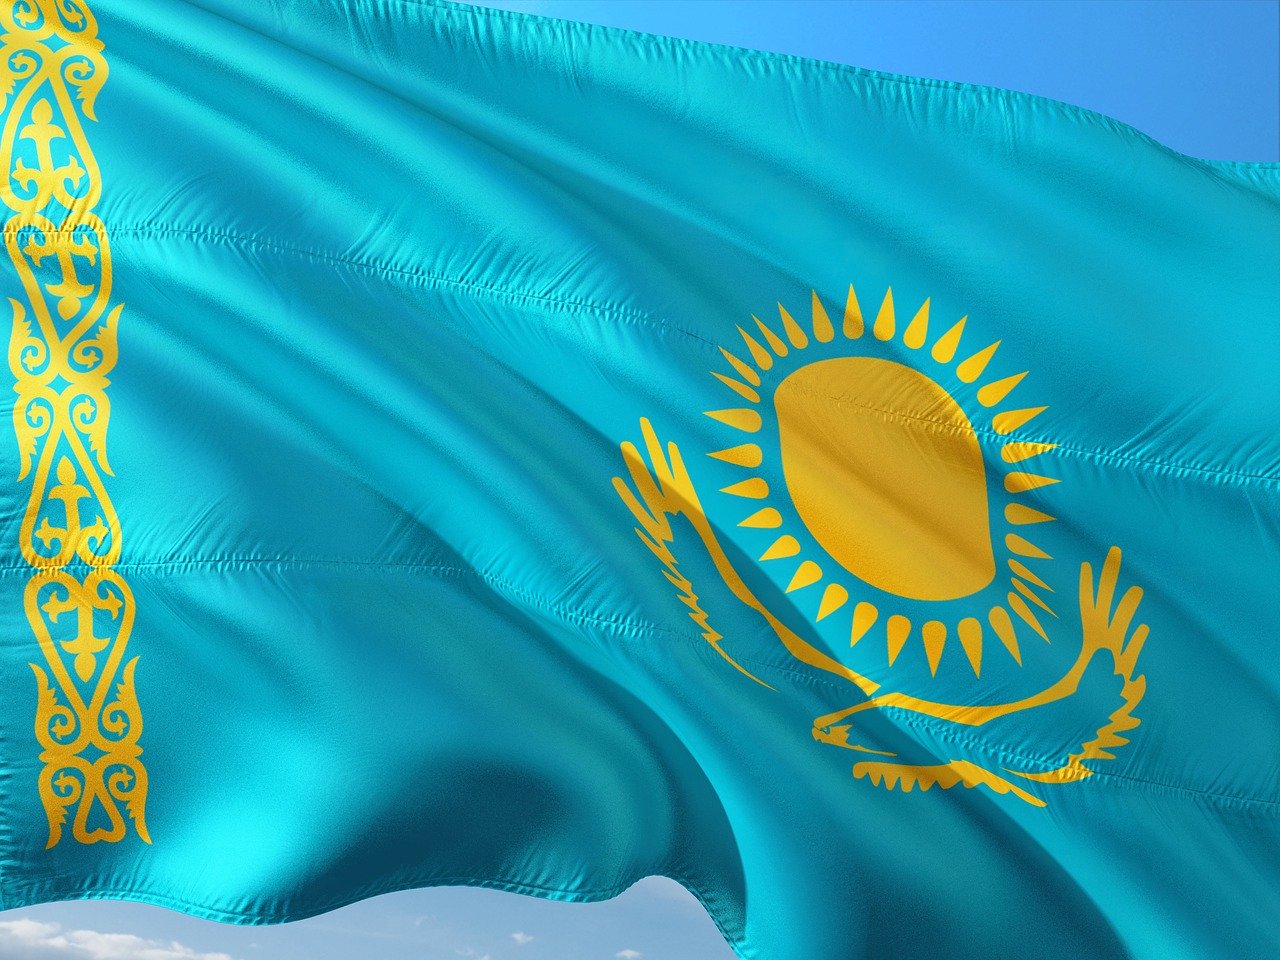 Реферат: Общество и культура Казахстана